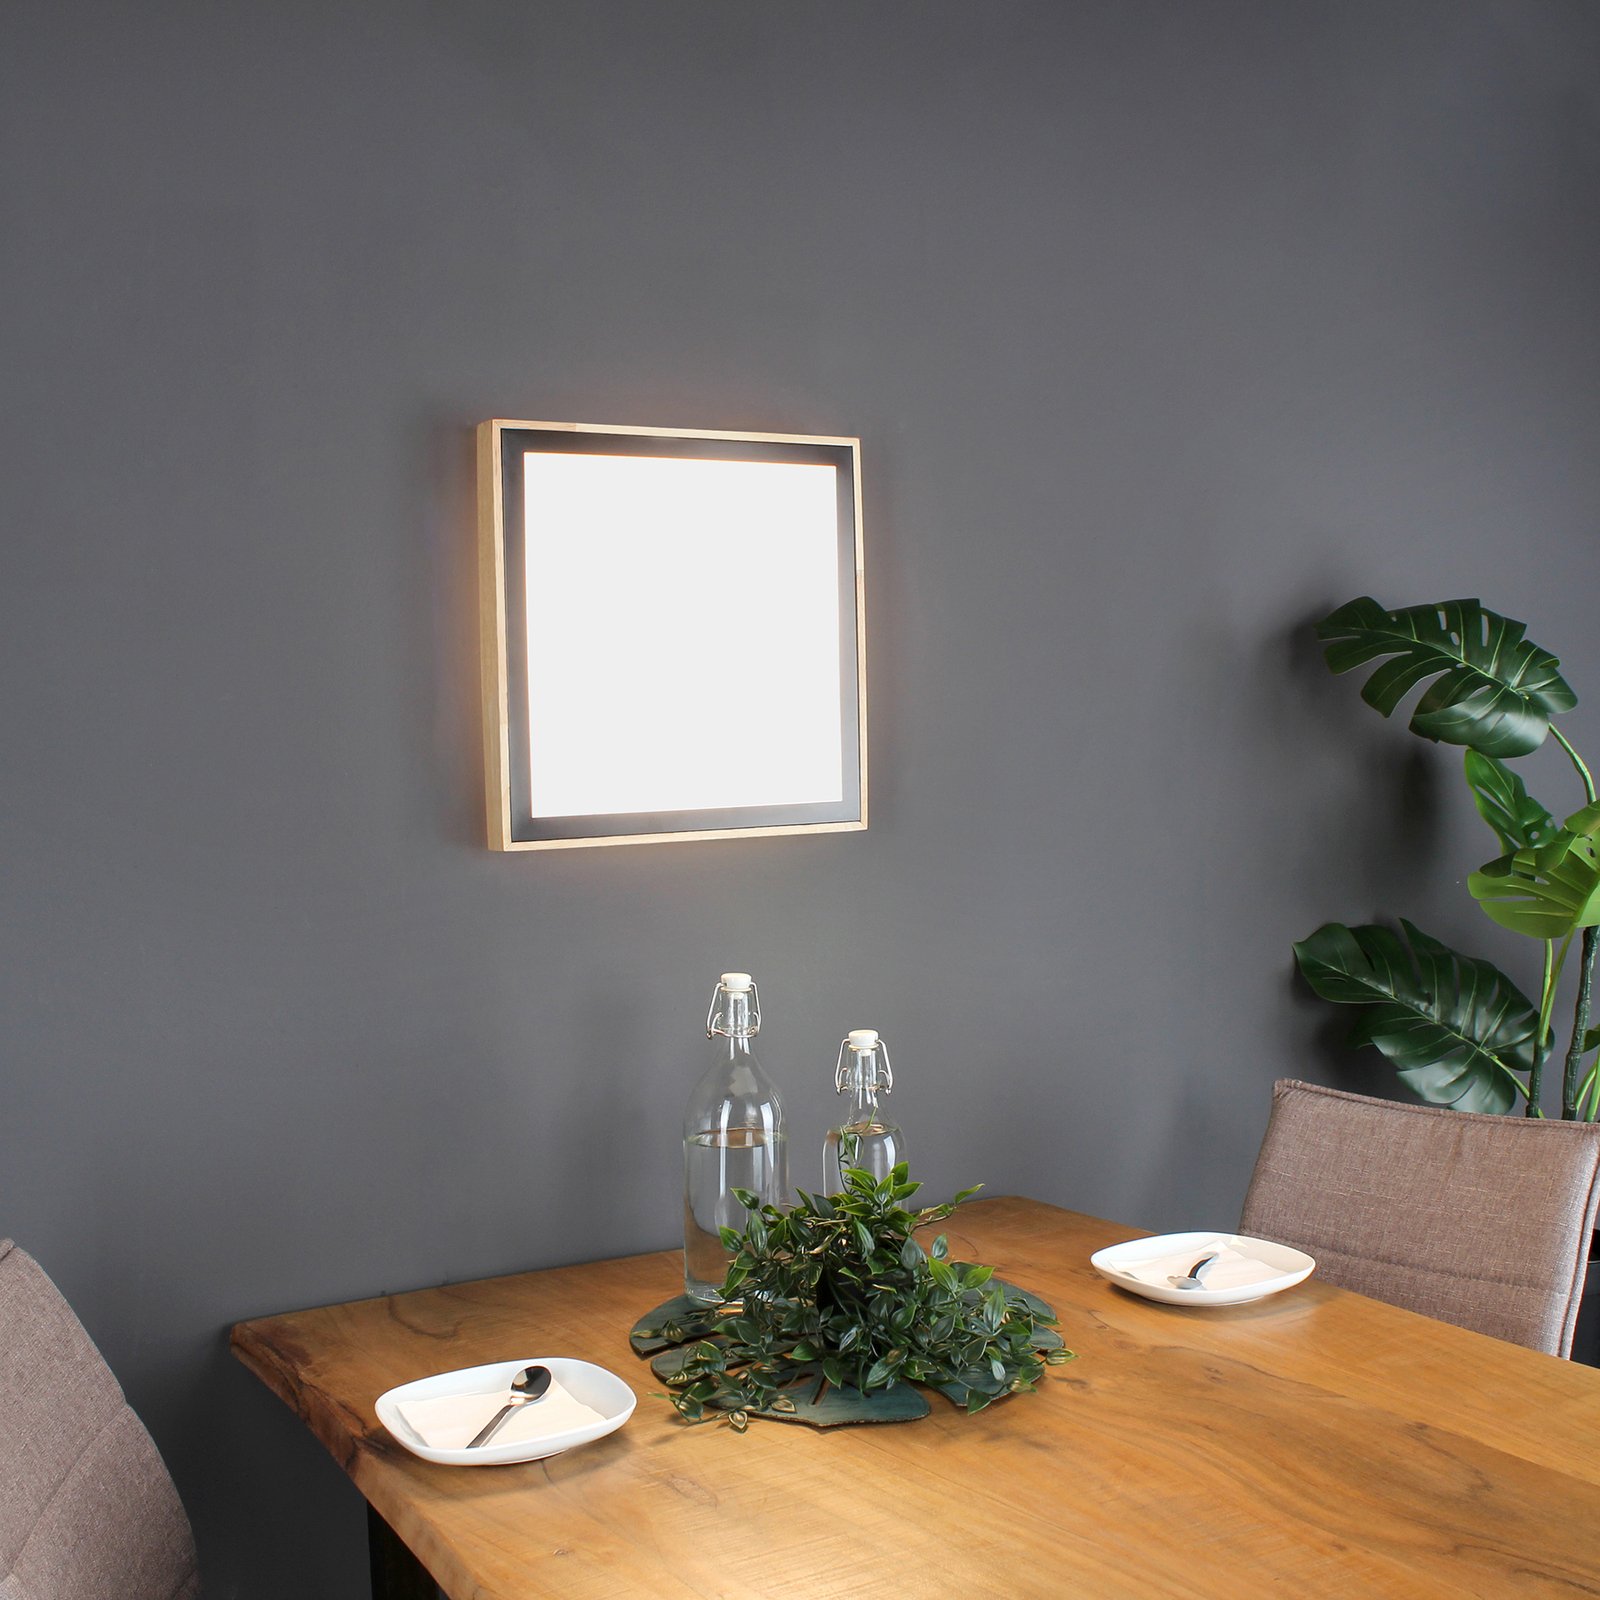 Solstar LED ceiling light, angular 33.5 x 33.5 cm